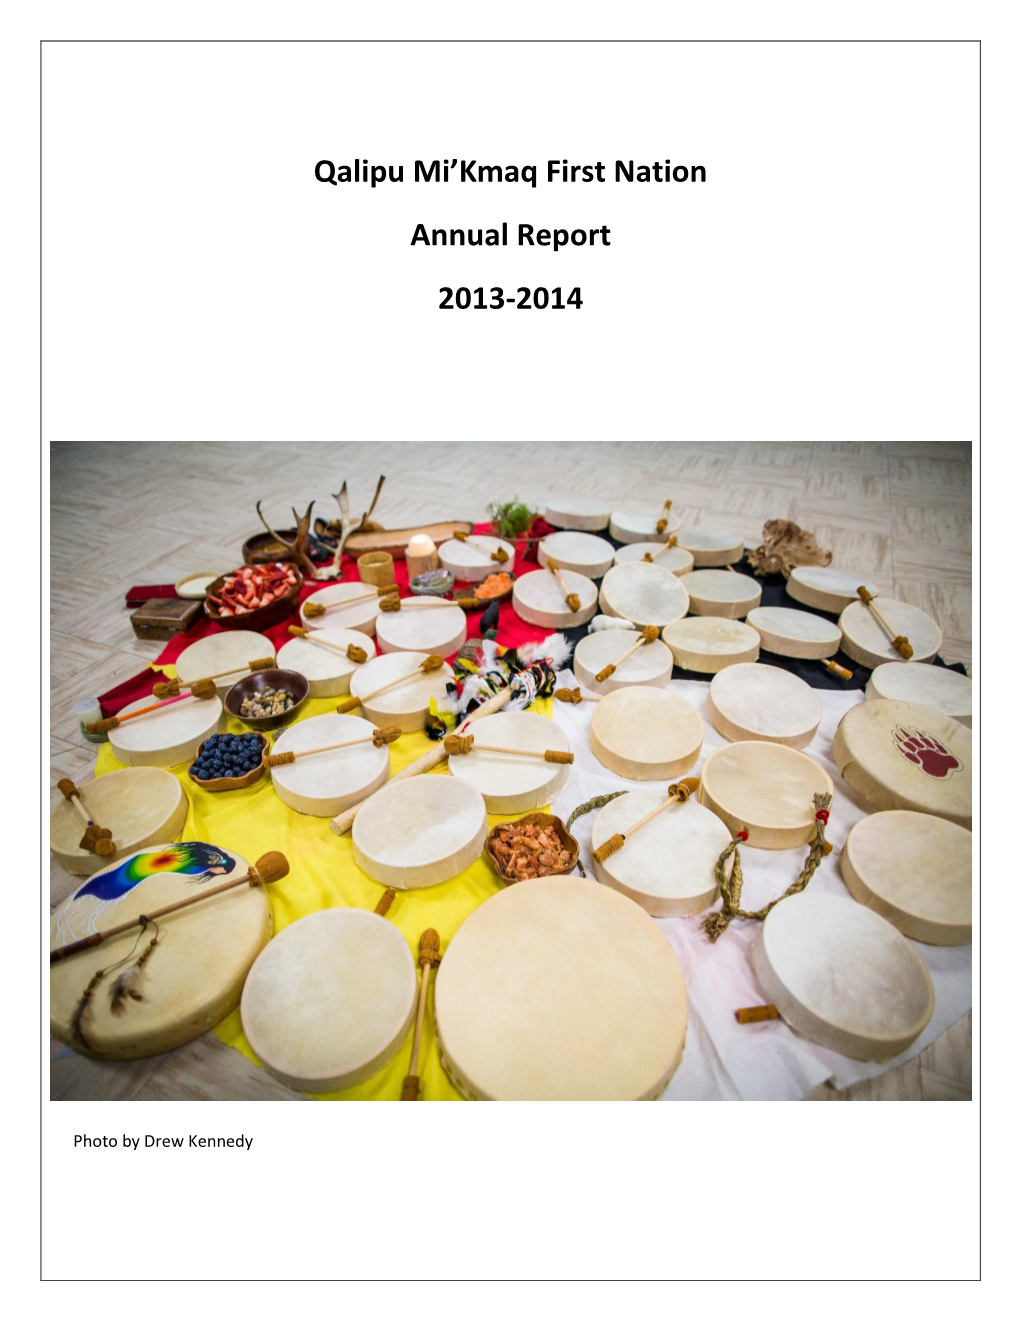 Qalipu Mi'kmaq First Nation Annual Report